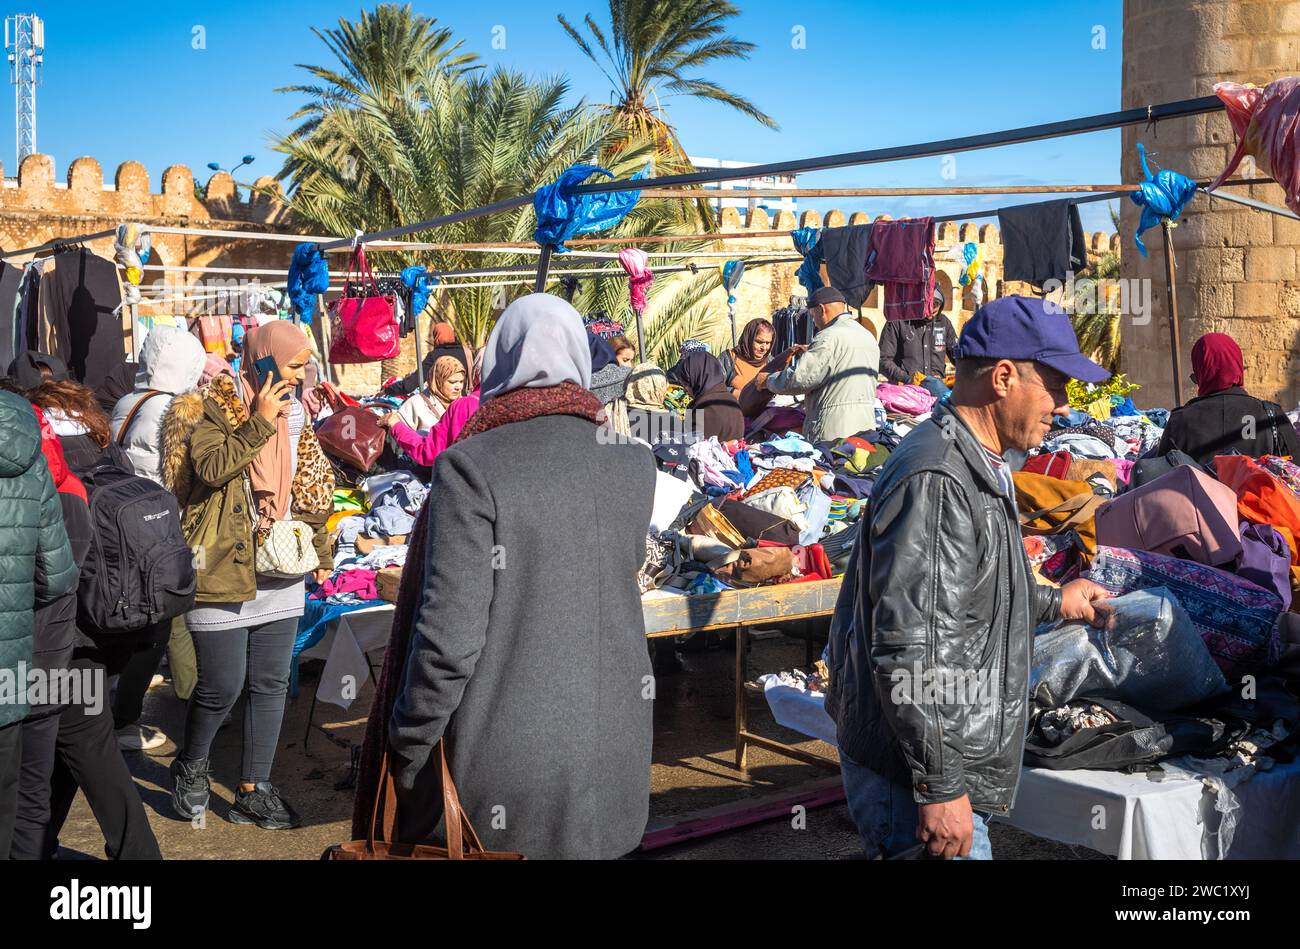 Les gens magasinent dans un marché de vêtements en plein air traditionnel animé à côté du Ribat et des anciens murs de la médina à Sousse, en Tunisie. Banque D'Images